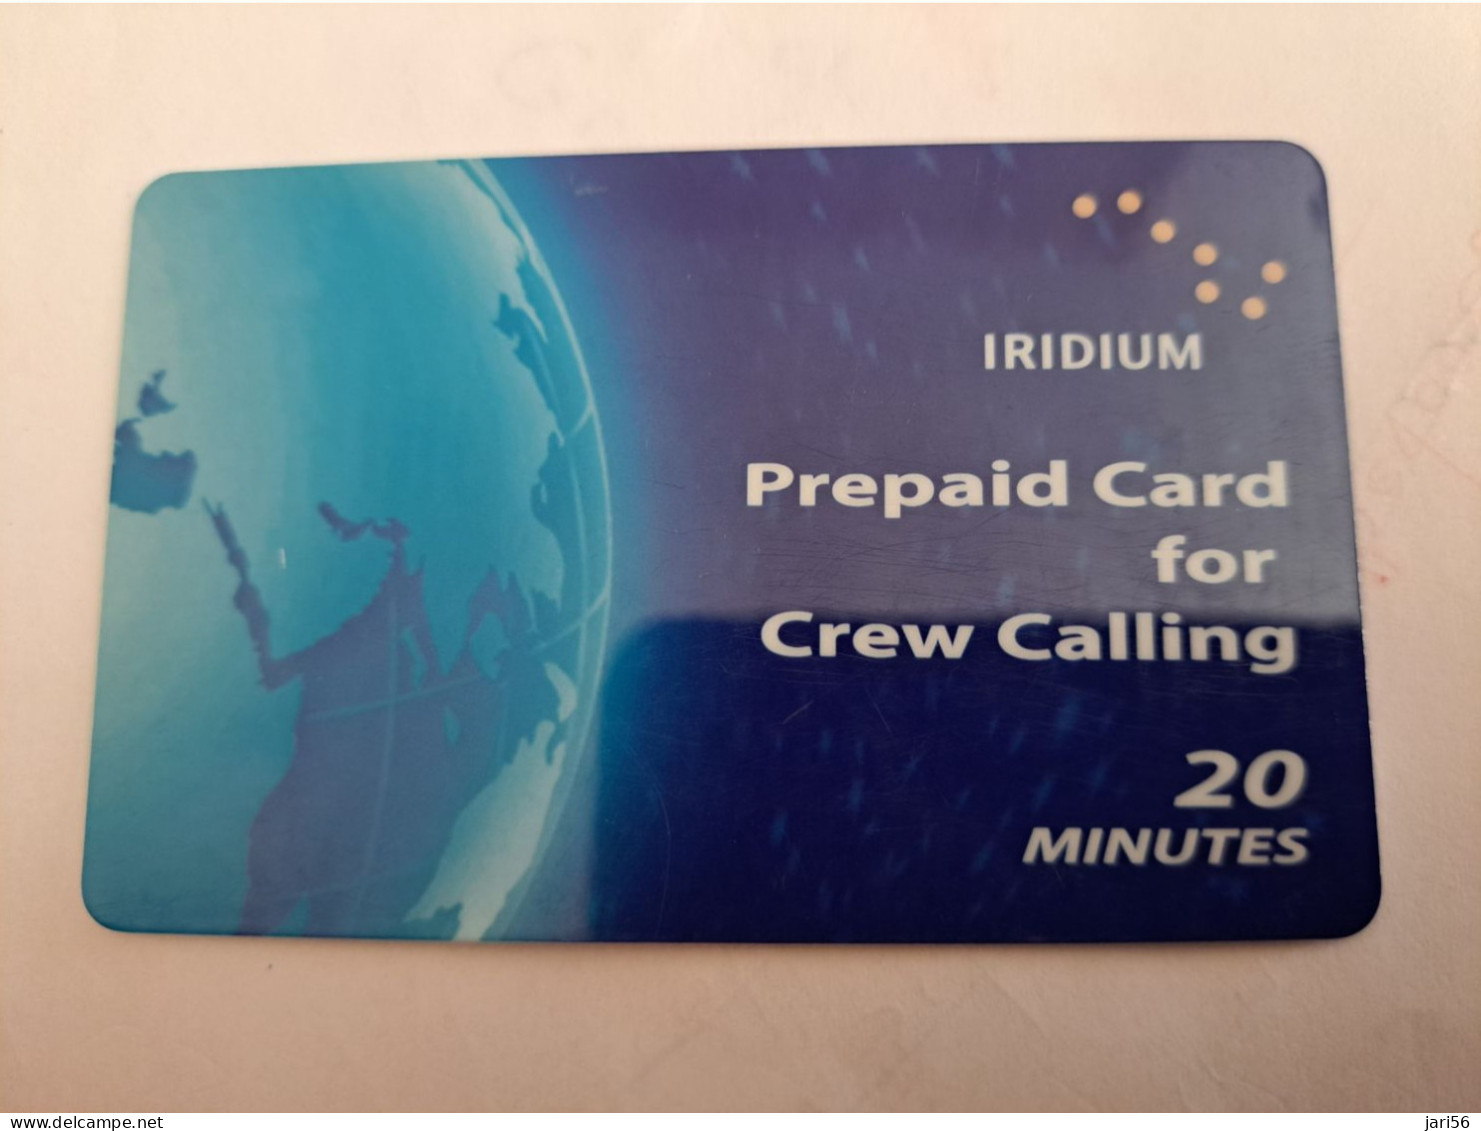 GREAT BRITAIN / IRIDIUM PREPAID/ CREW CALLING  /20 MINUTES   PREPAID CARD / USED       **14042** - Verzamelingen